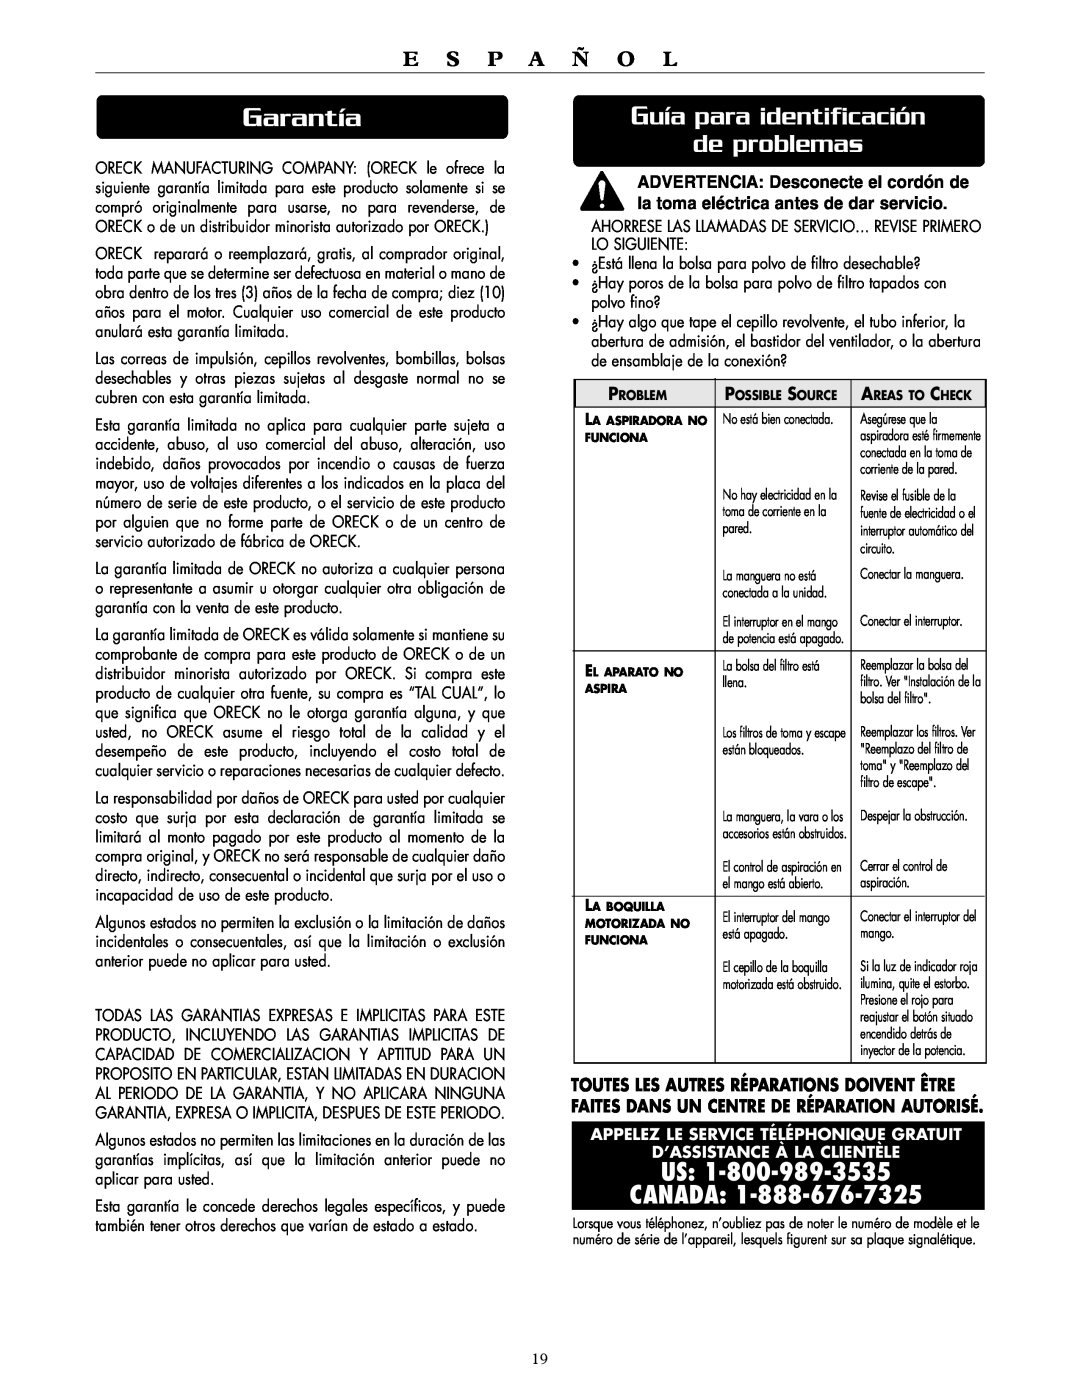 Oreck DTX 1400A Garantía, Guía para identificación de problemas, Us Canada, E S P A Ñ O L, D’Assistance À La Clientèle 